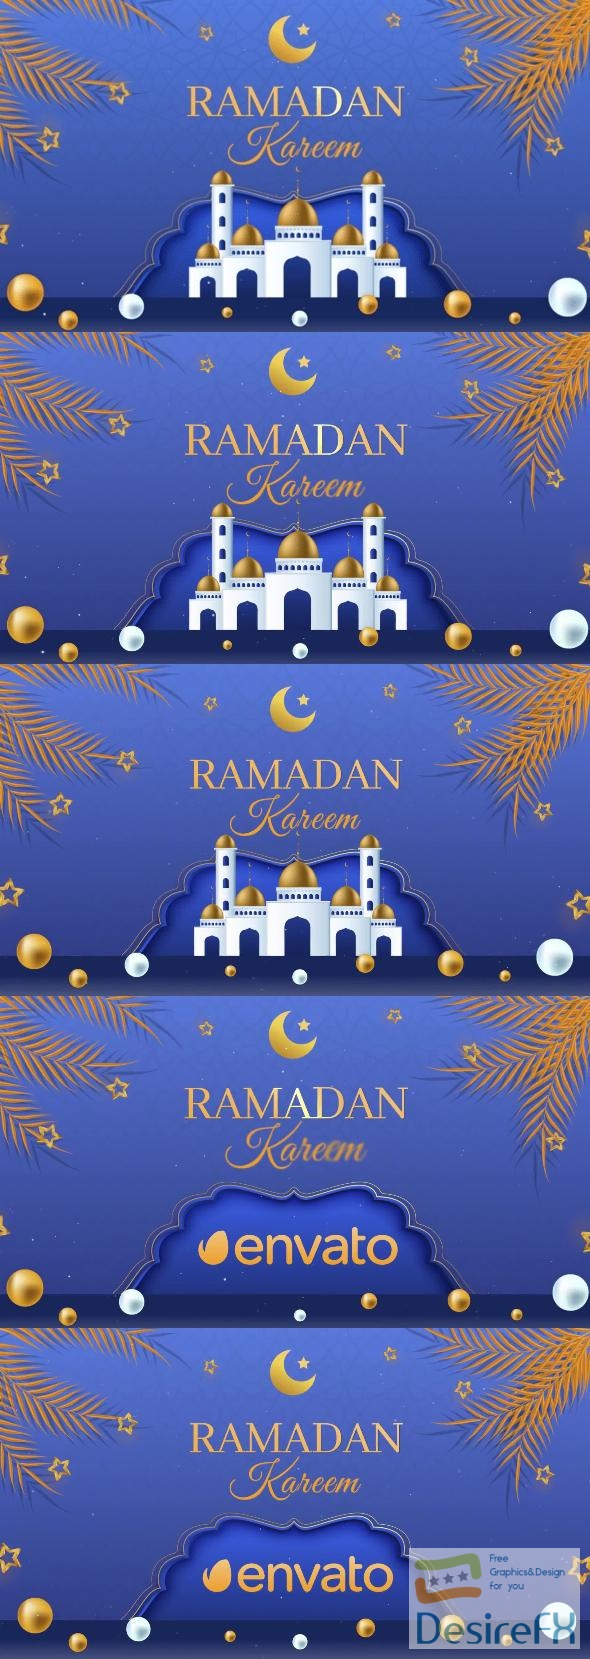 VideoHive Ramadan Intro 43569830